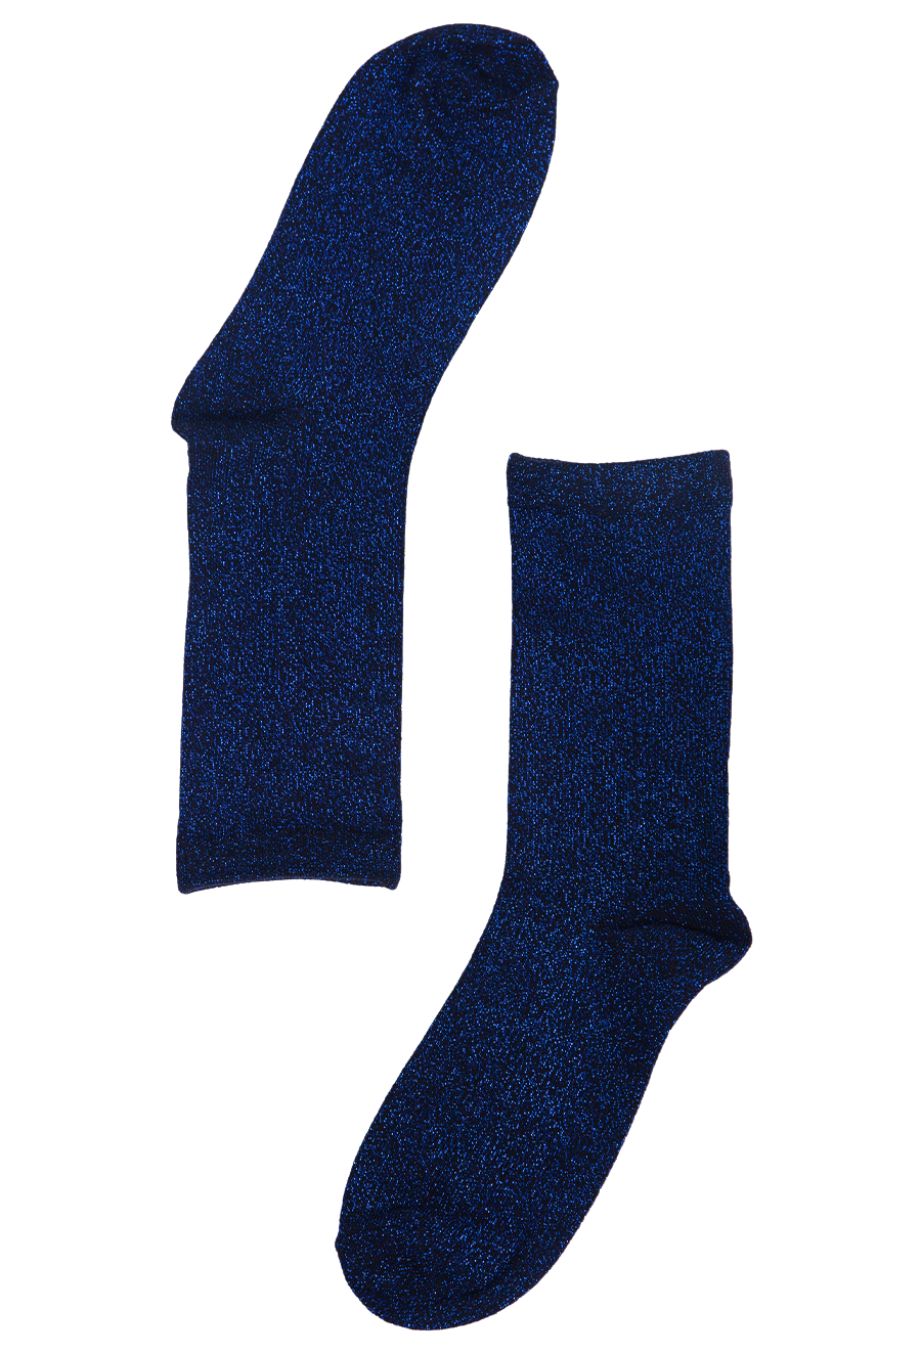 women's blue glitter ankle socks 